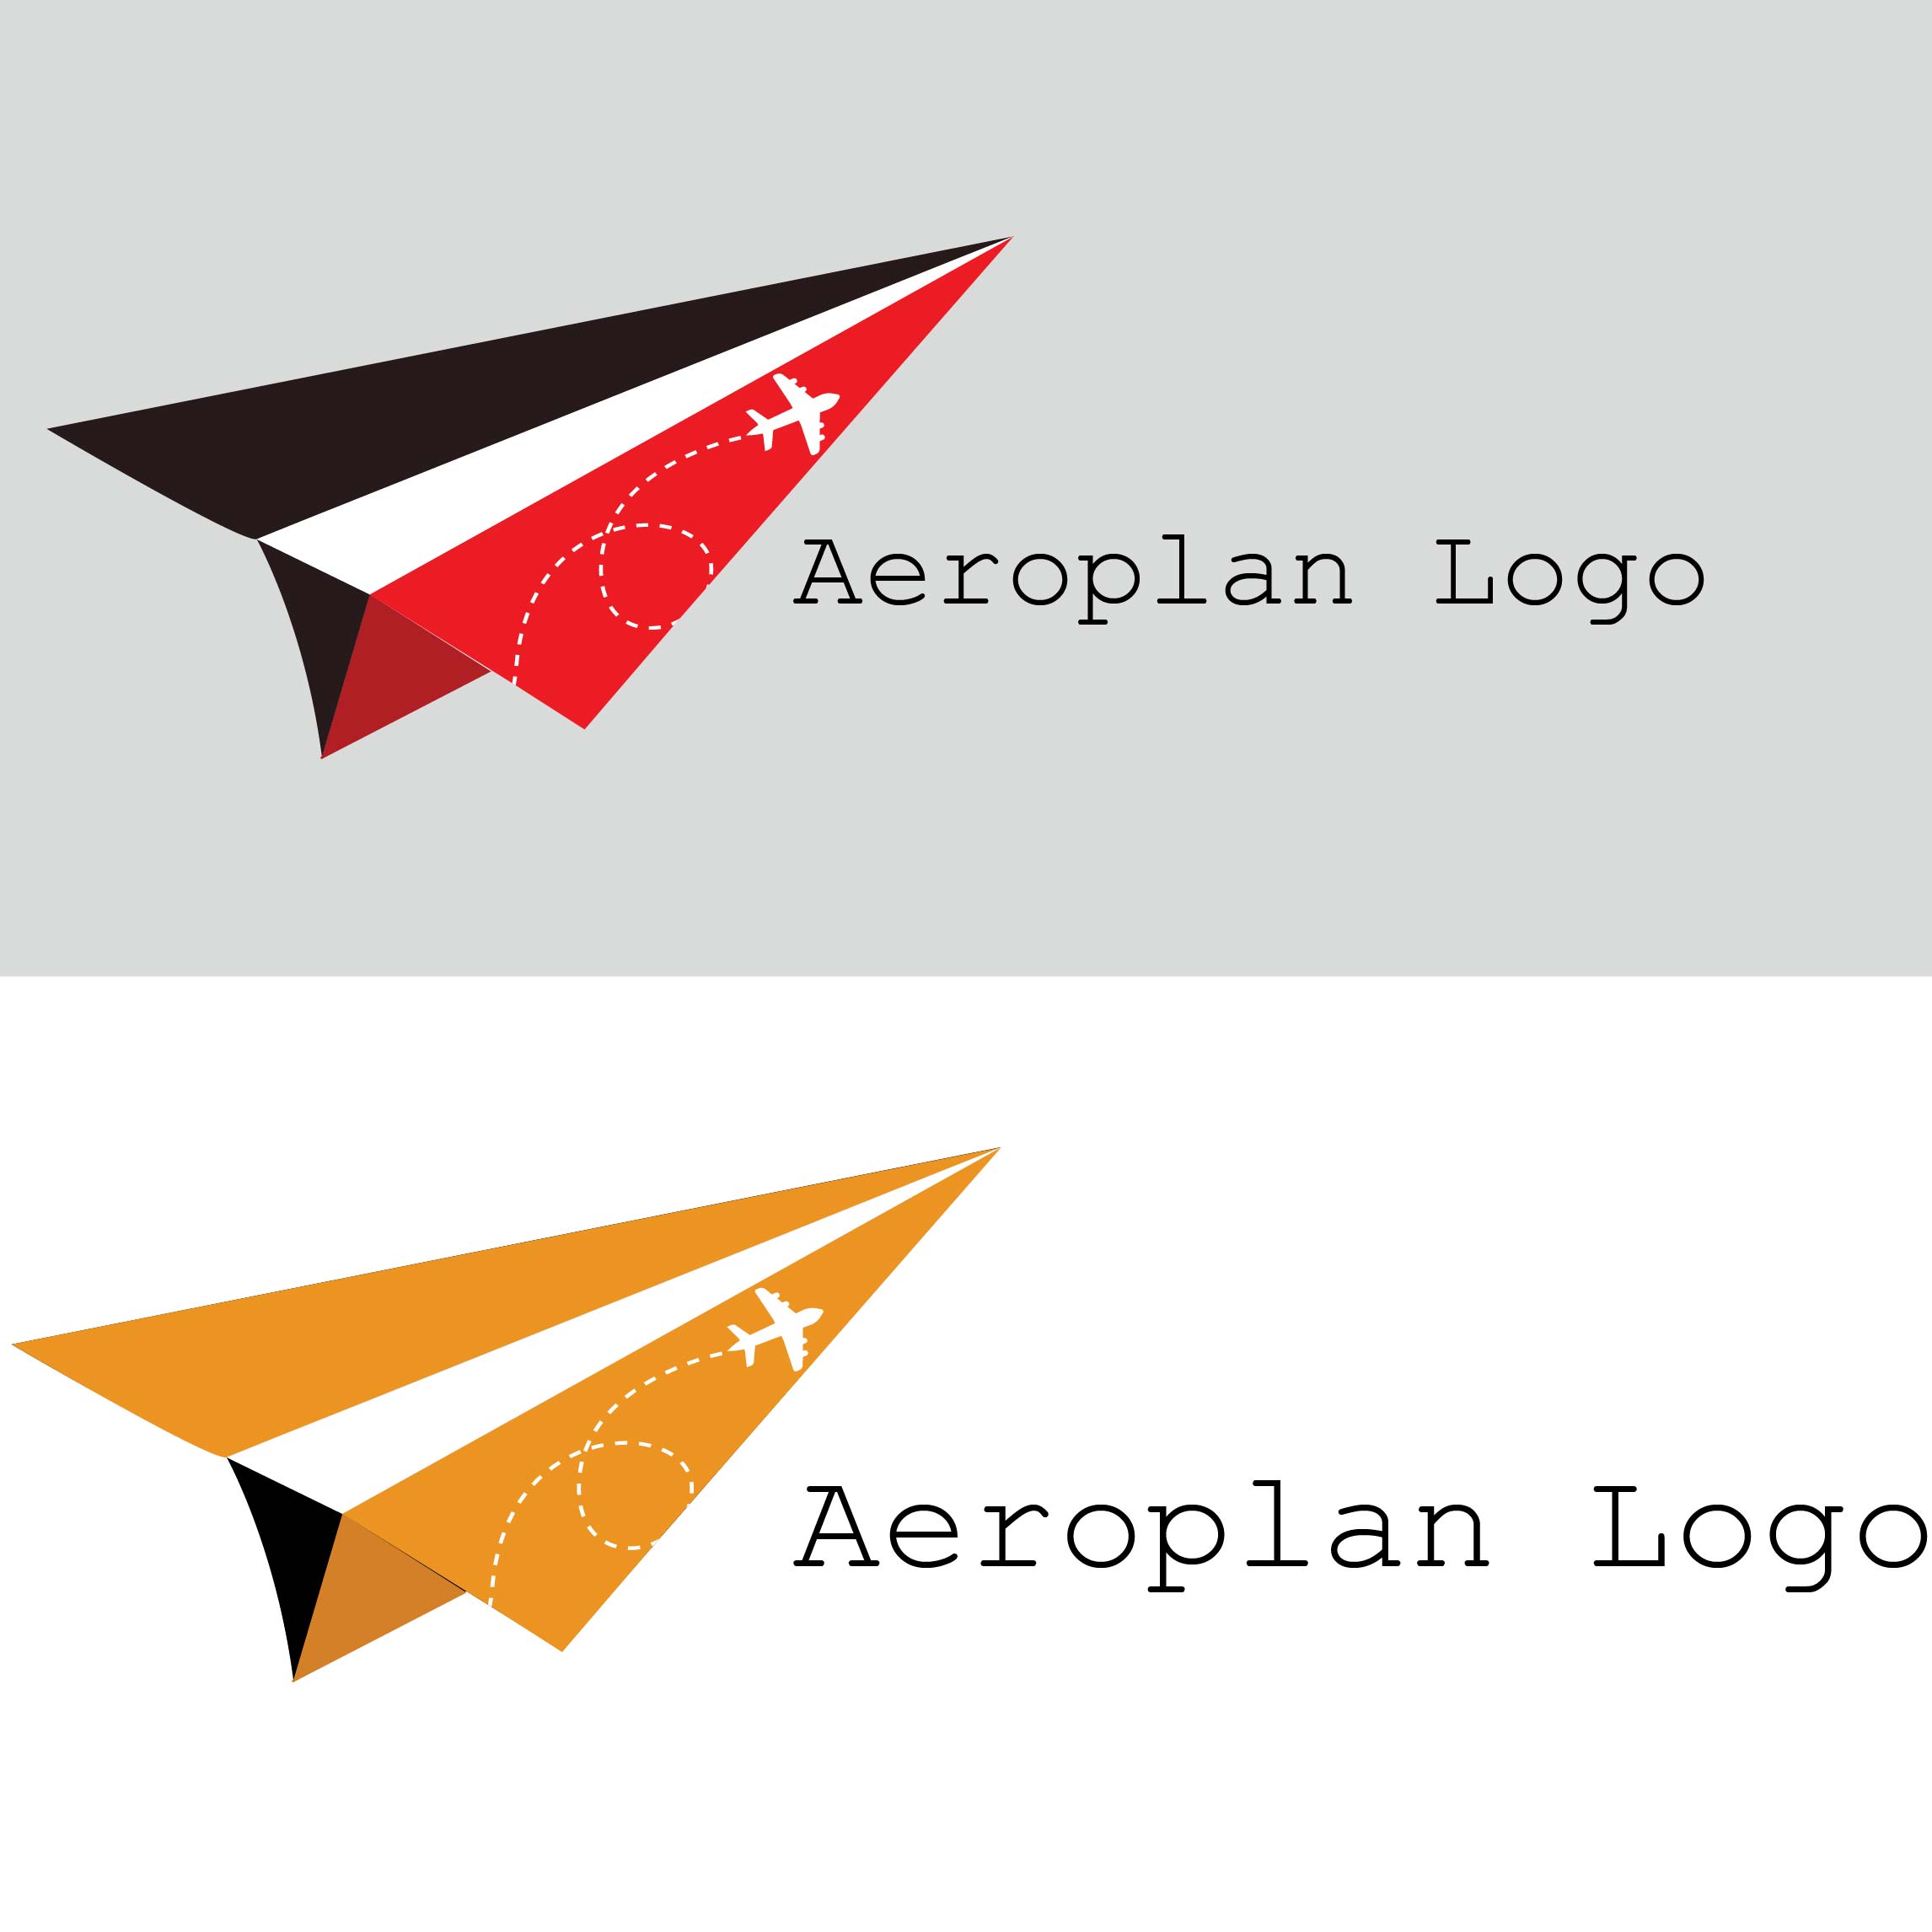 Aeroplan logo , fly logo travel logo preview image.